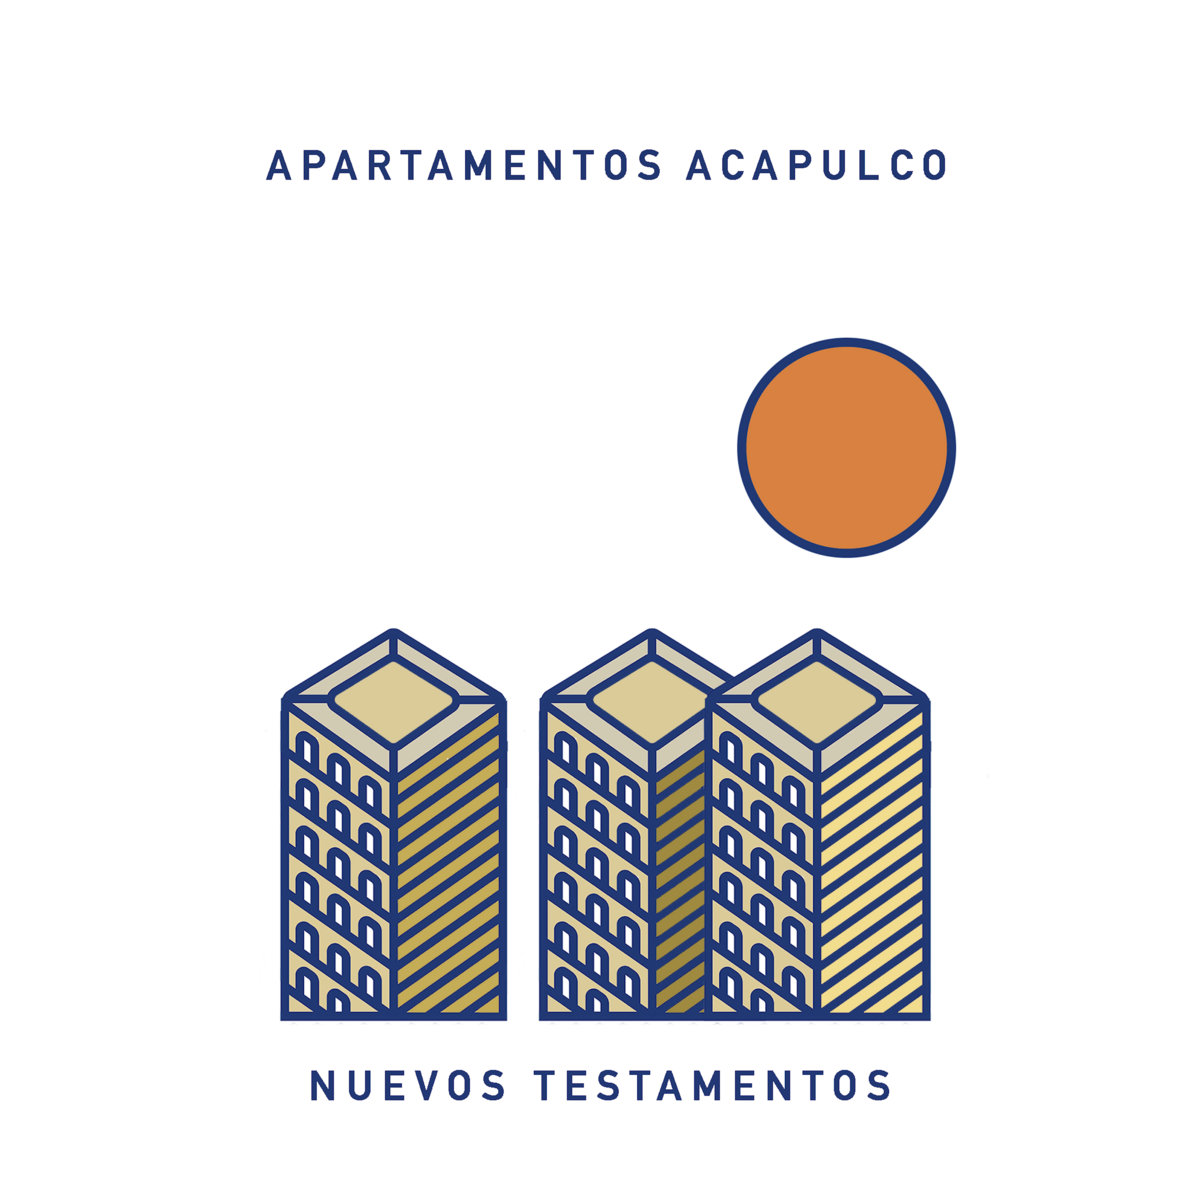 Apartamentos Acapulco “Nuevos testamentos” LP 1